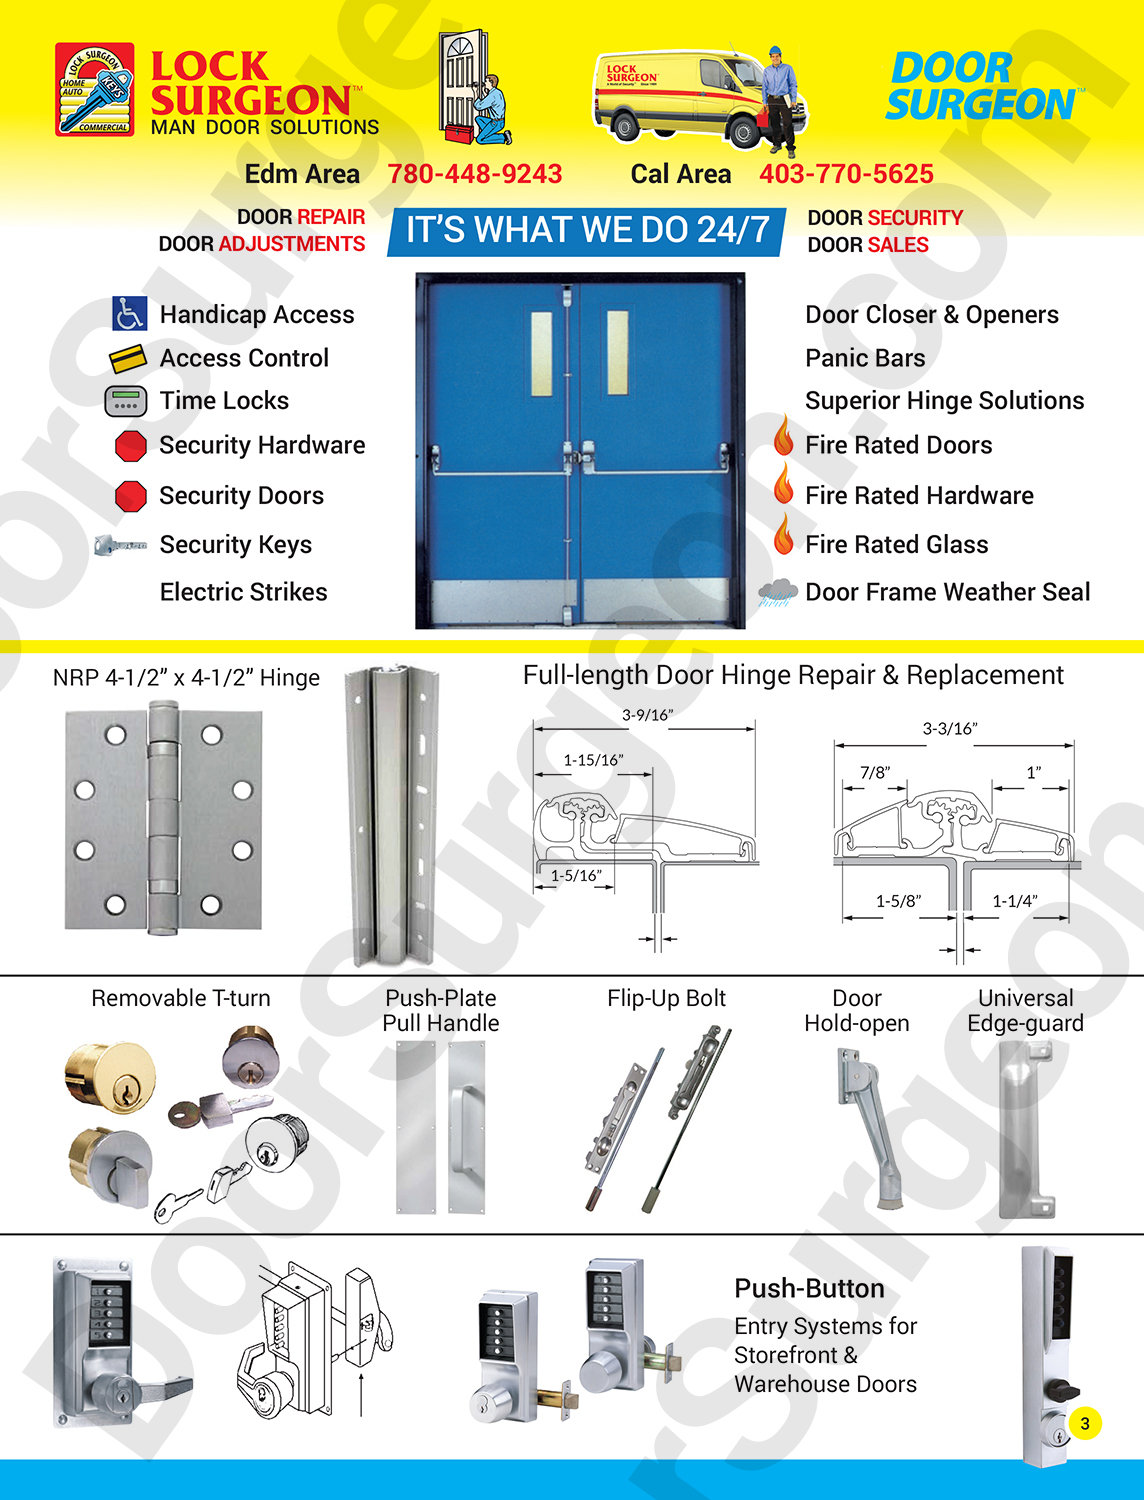 Door Surgeon mobile commercial industrial steel door repair & installations door closers panic bars.